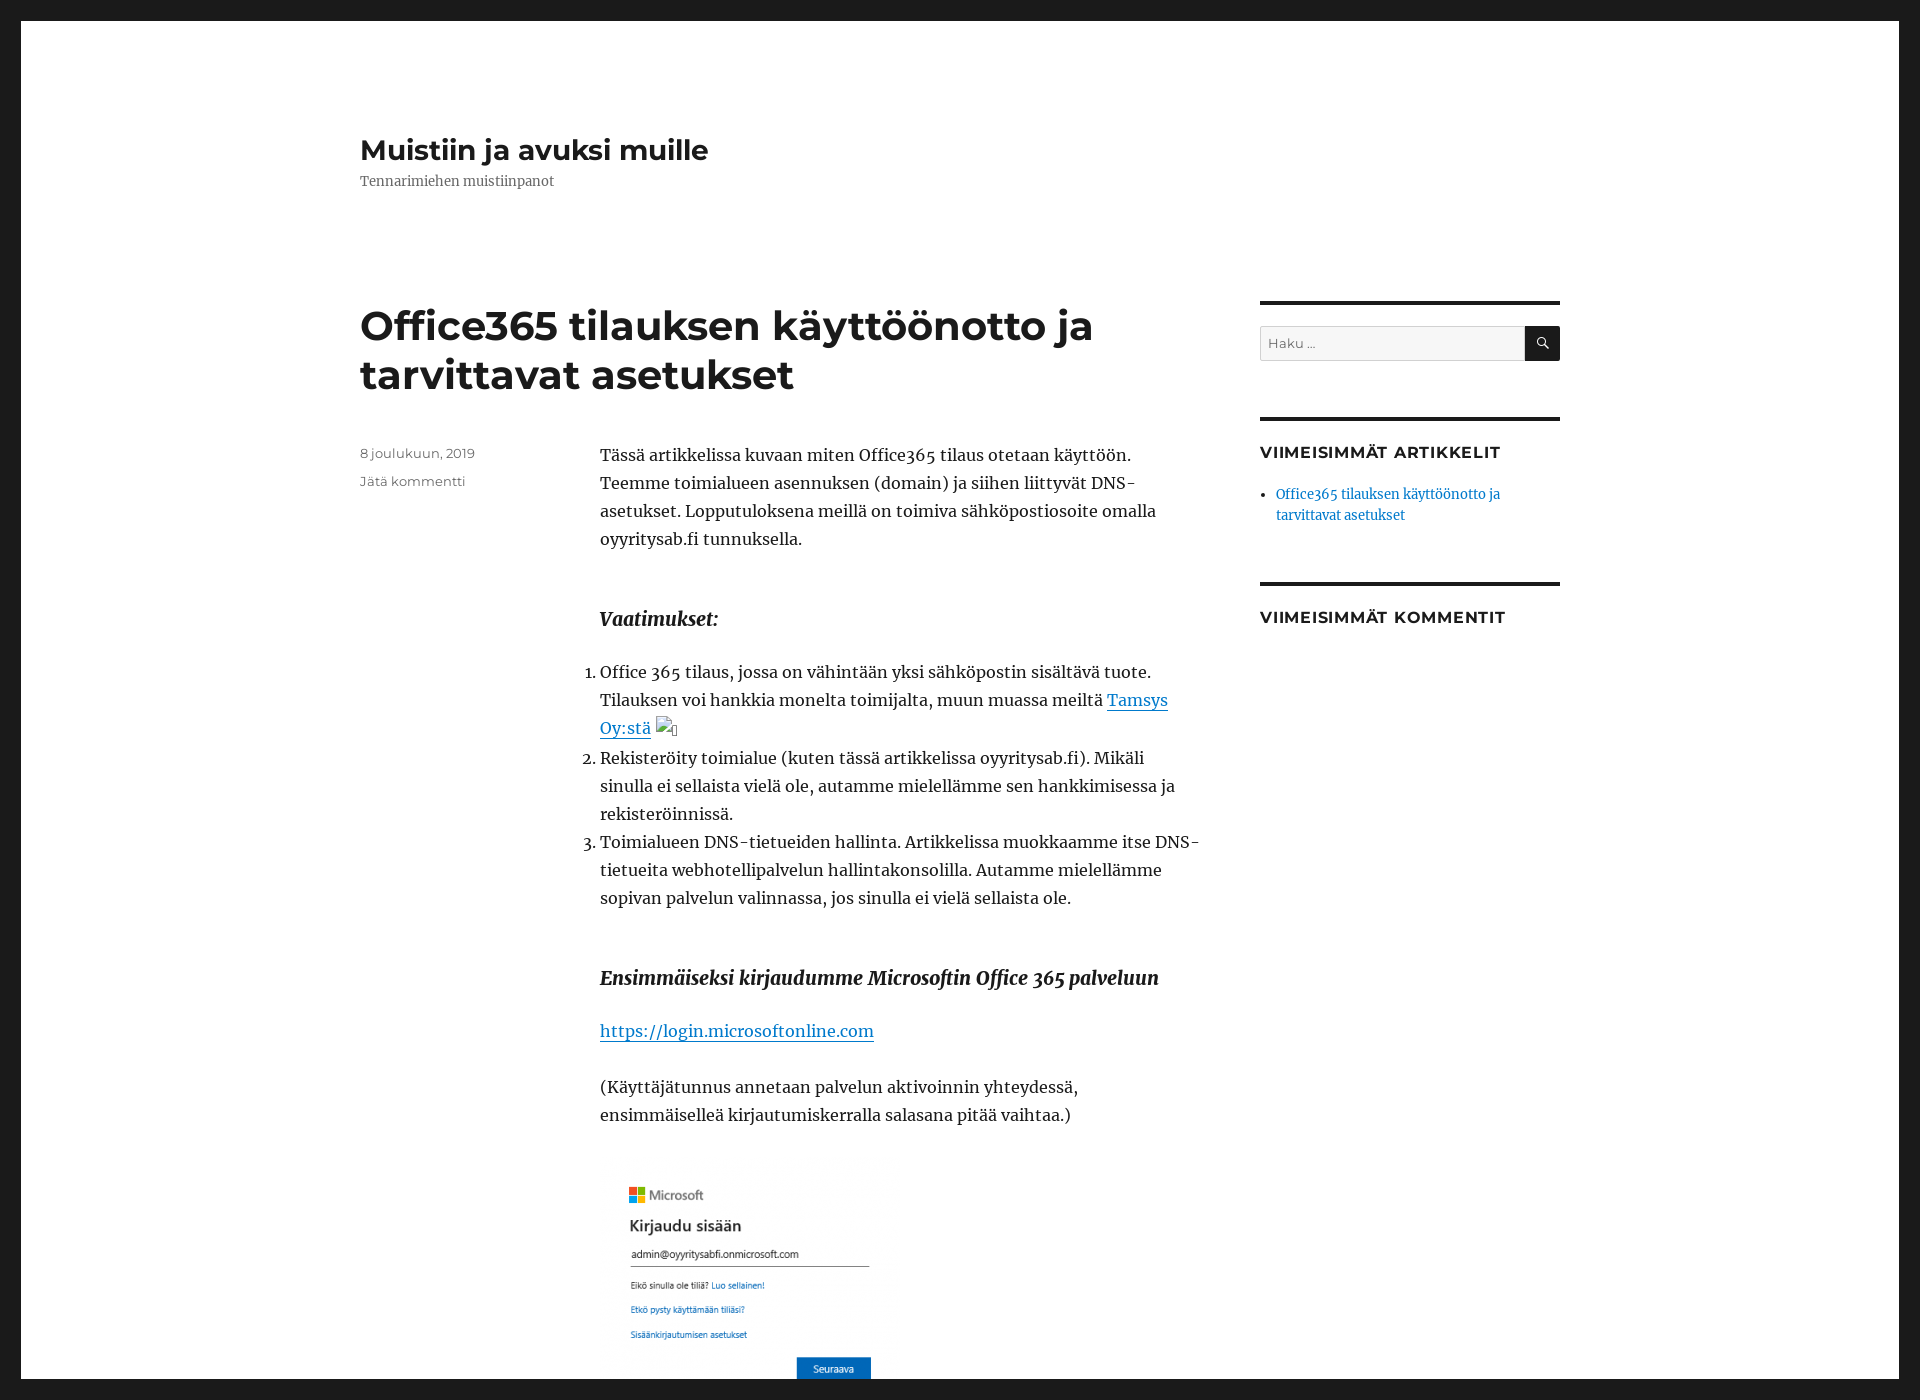 Näyttökuva oyyritysab.fi